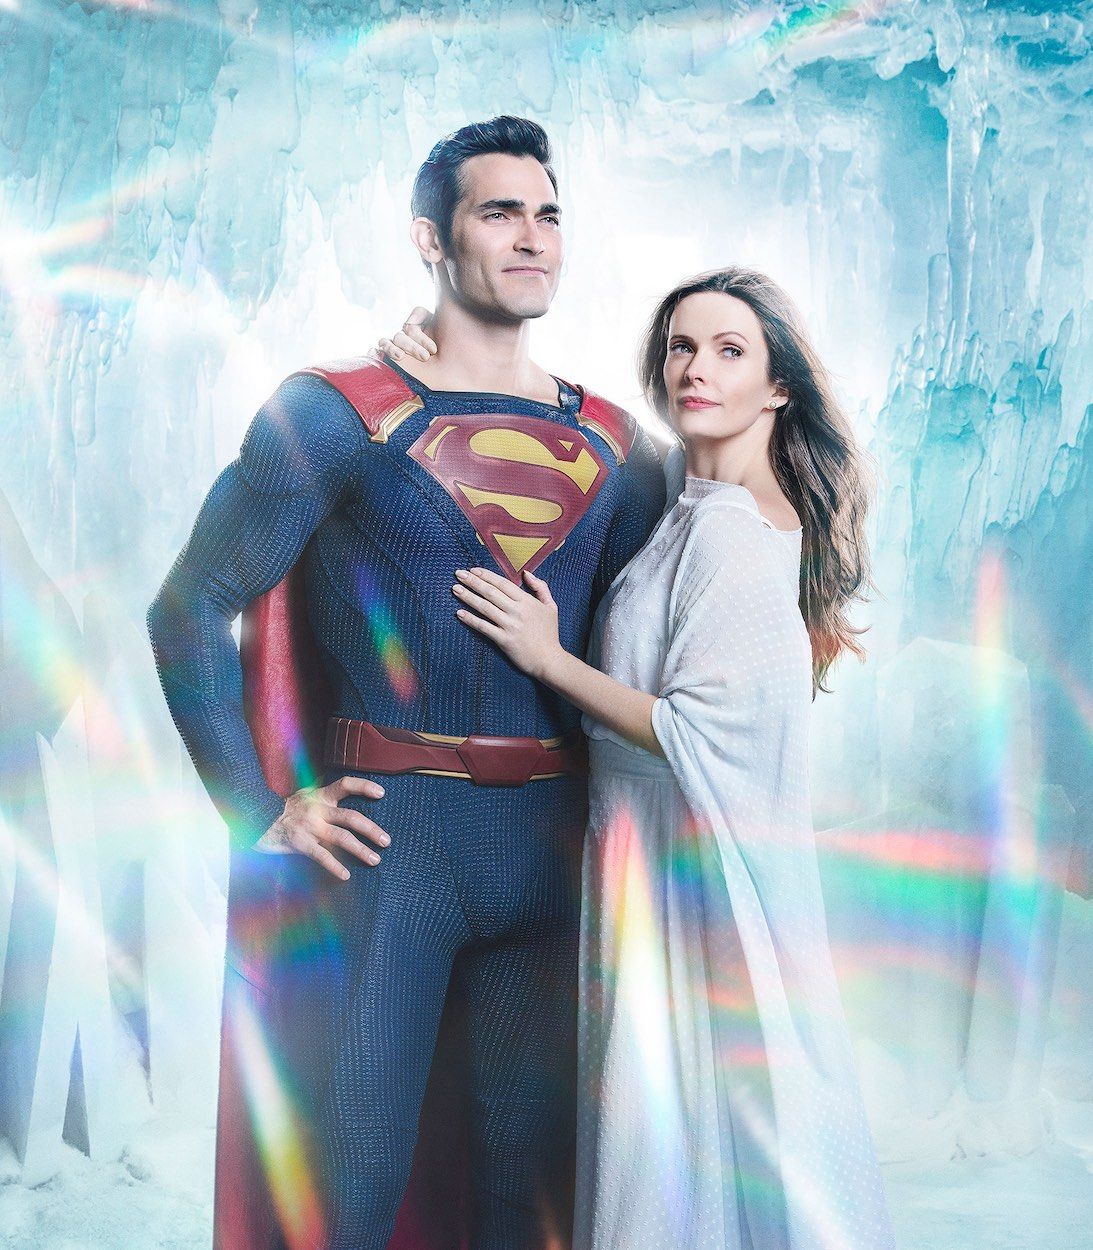 Tyler Hoechlin as Clark Kent aka Superman and Elizabeth Tulloch as Lois Lane in the Arrowverse